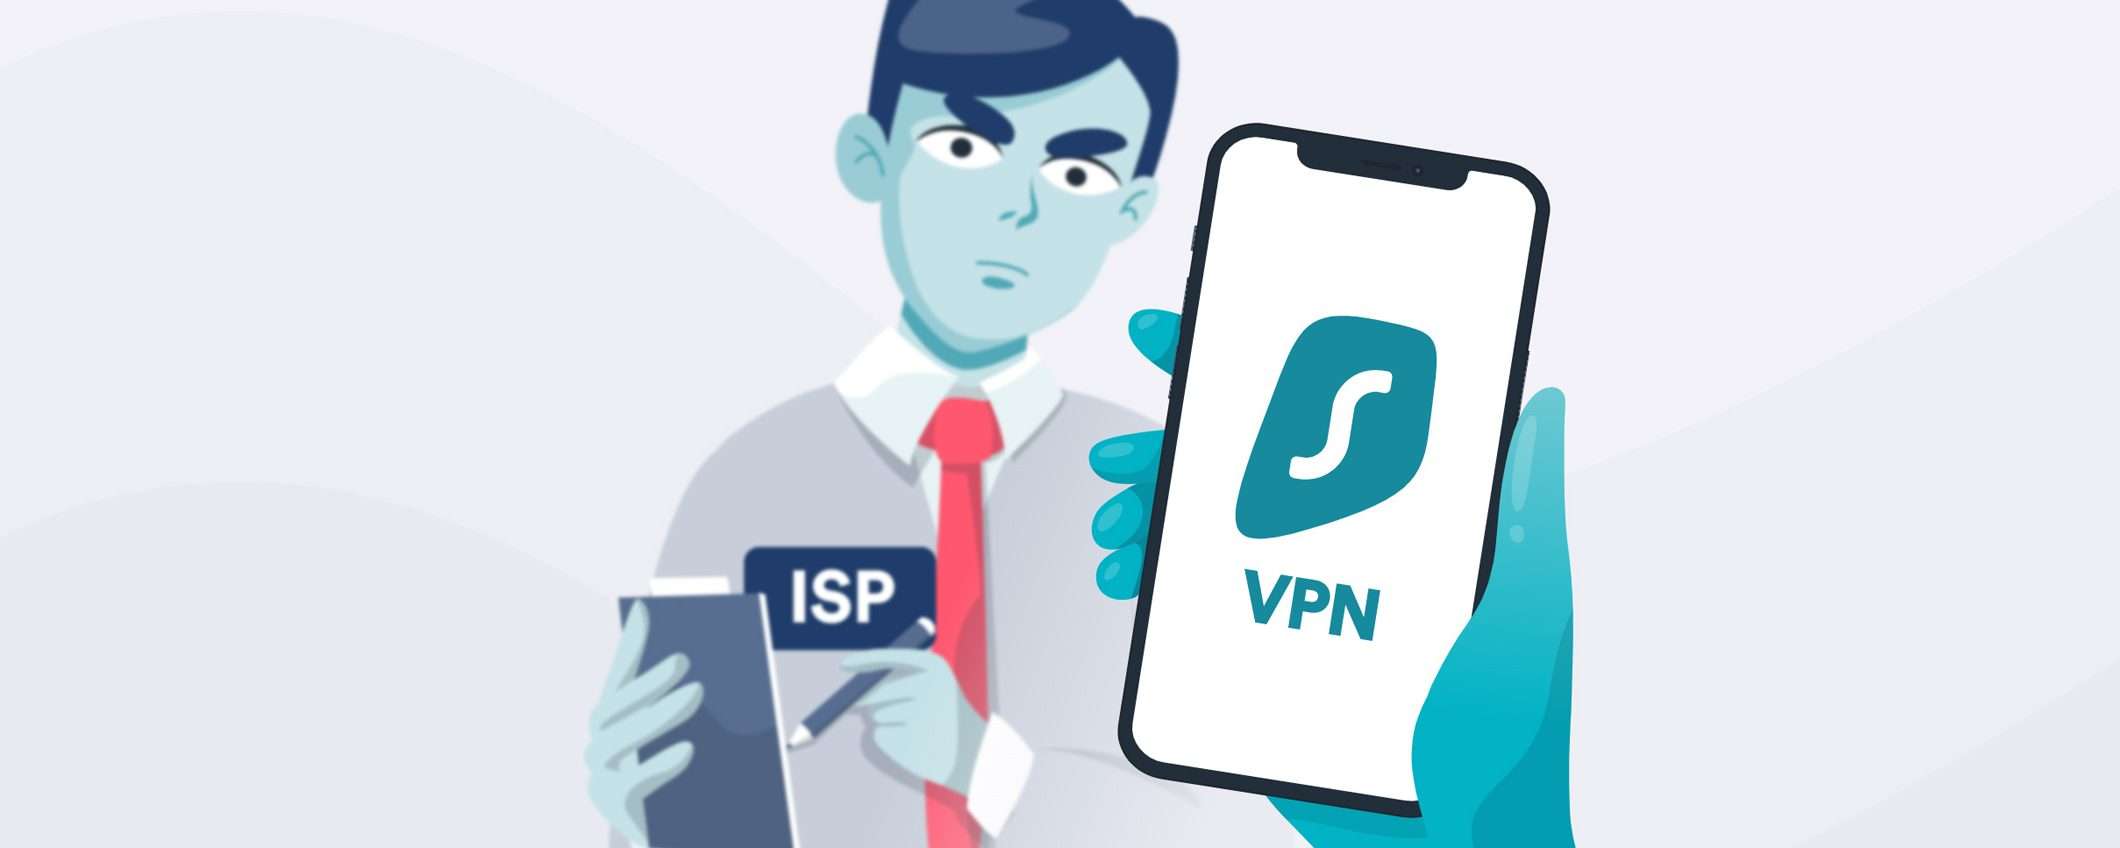 Il mio ISP può vedere se utilizzo una VPN?